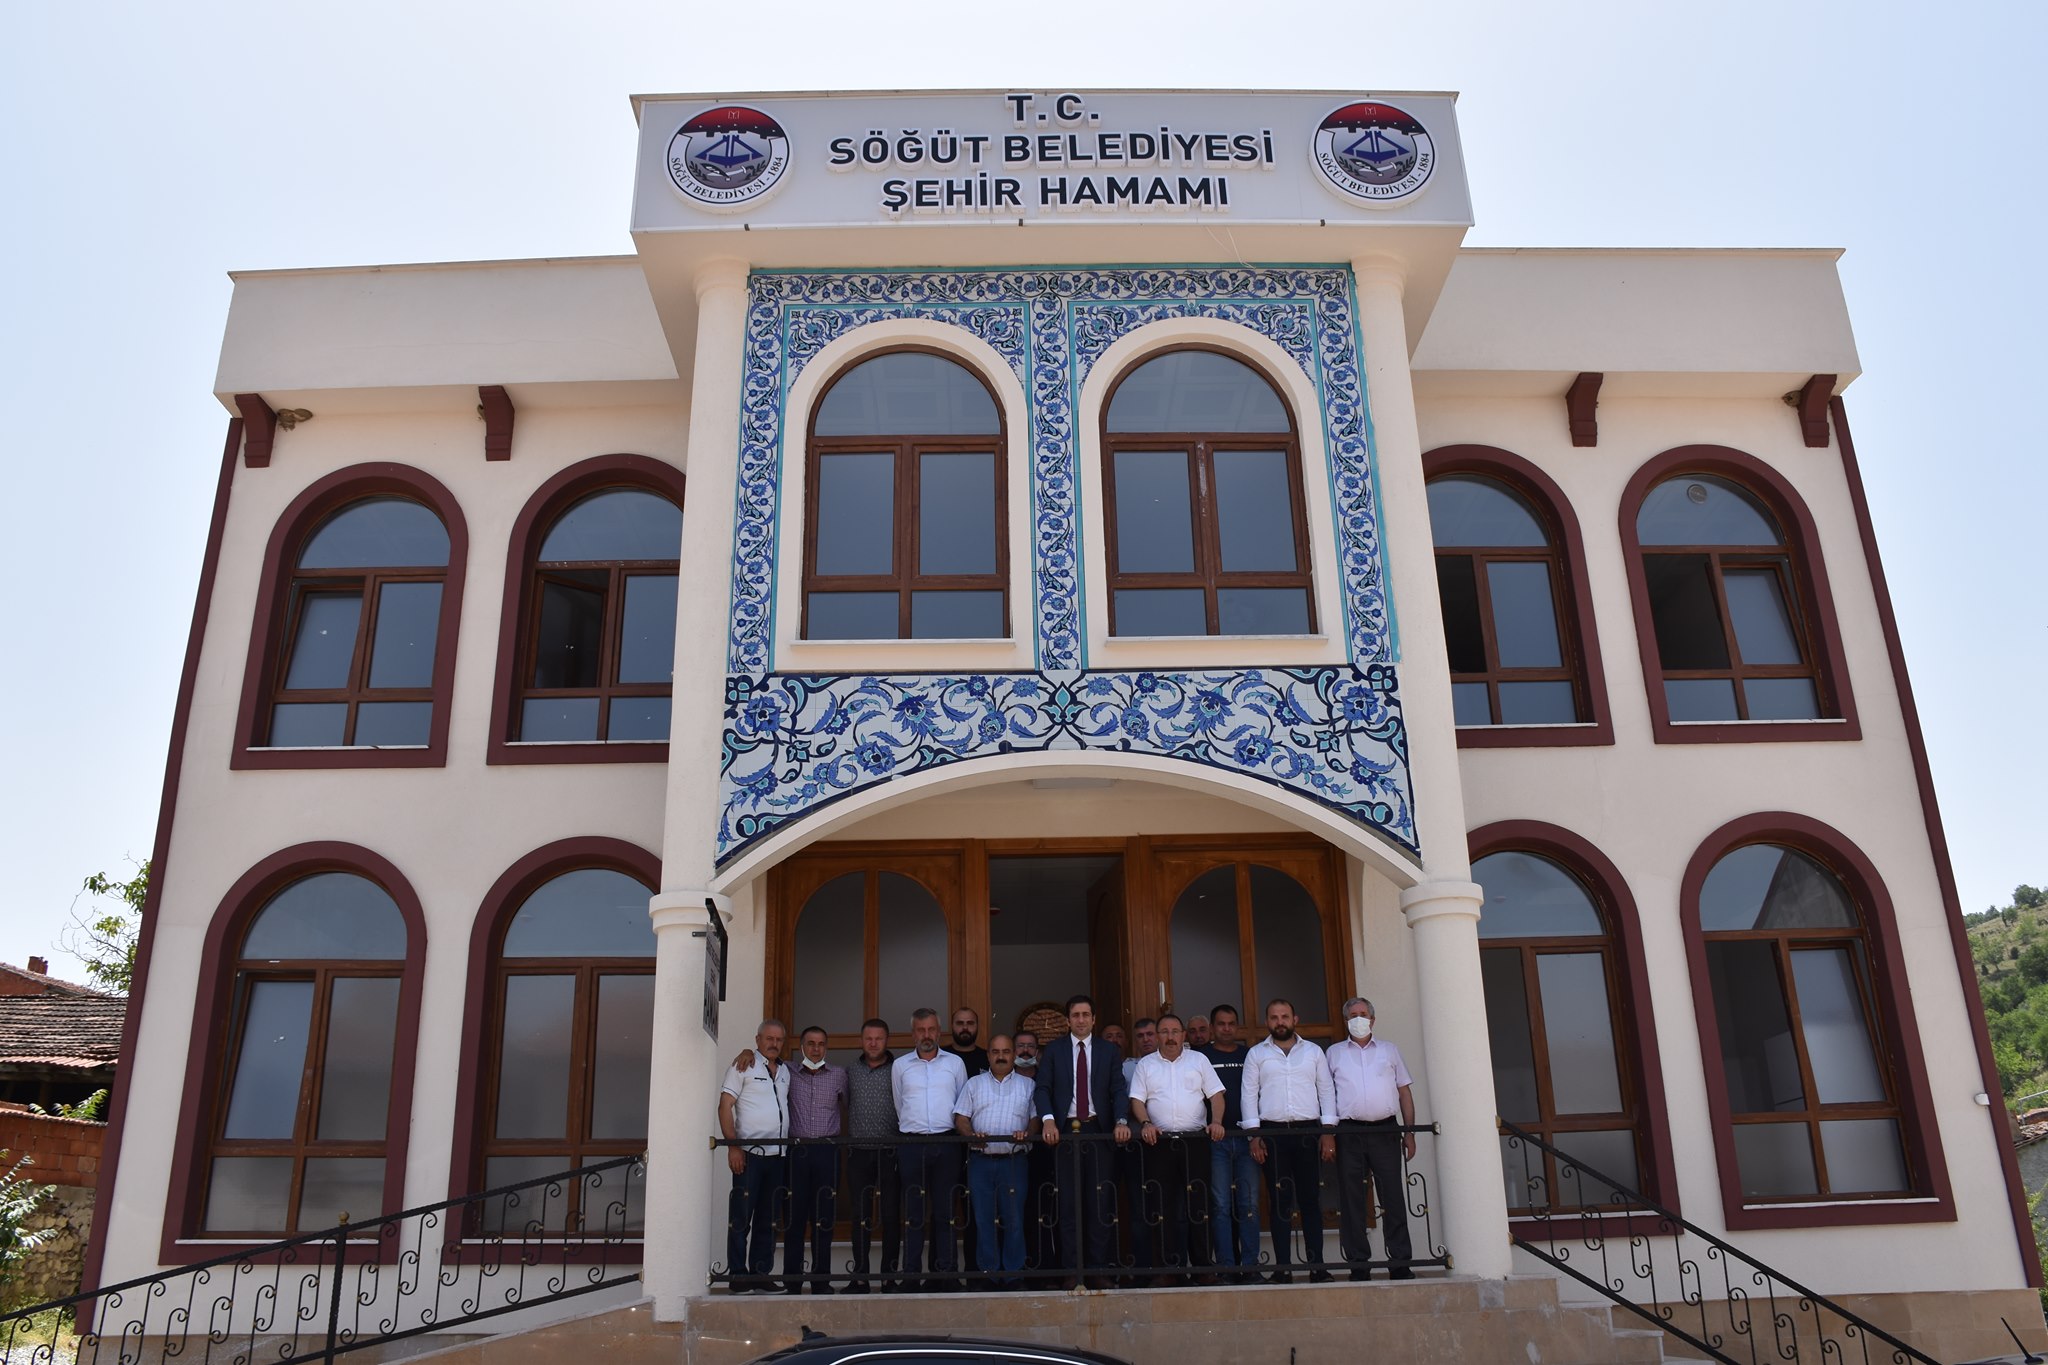  Söğüt Belediyesi İlçe Hamamı Hizmete Açıldı